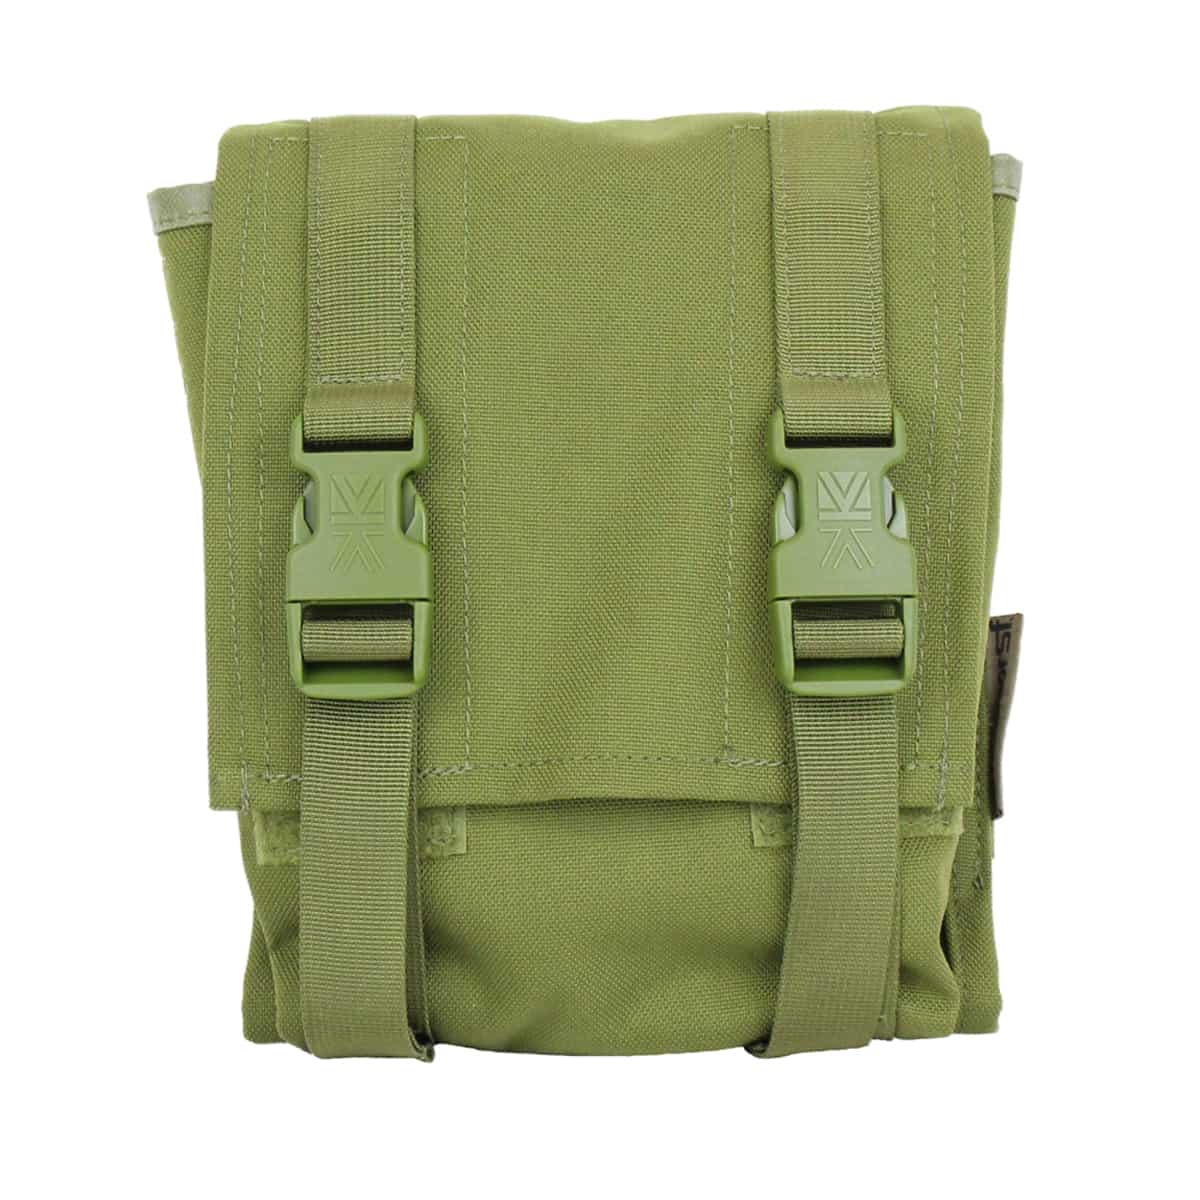 Kupite vrhunsko vojaško večnamensko MOLLE torbico Karrimor SF Predator Omni QR. Modularna torbica z visoko vzdržljivostjo in odpornostjo na vremenske vplive. Idealna za vojaško in outdoor uporabo. Uživajte v vrhunski kakovosti in funkcionalnosti.